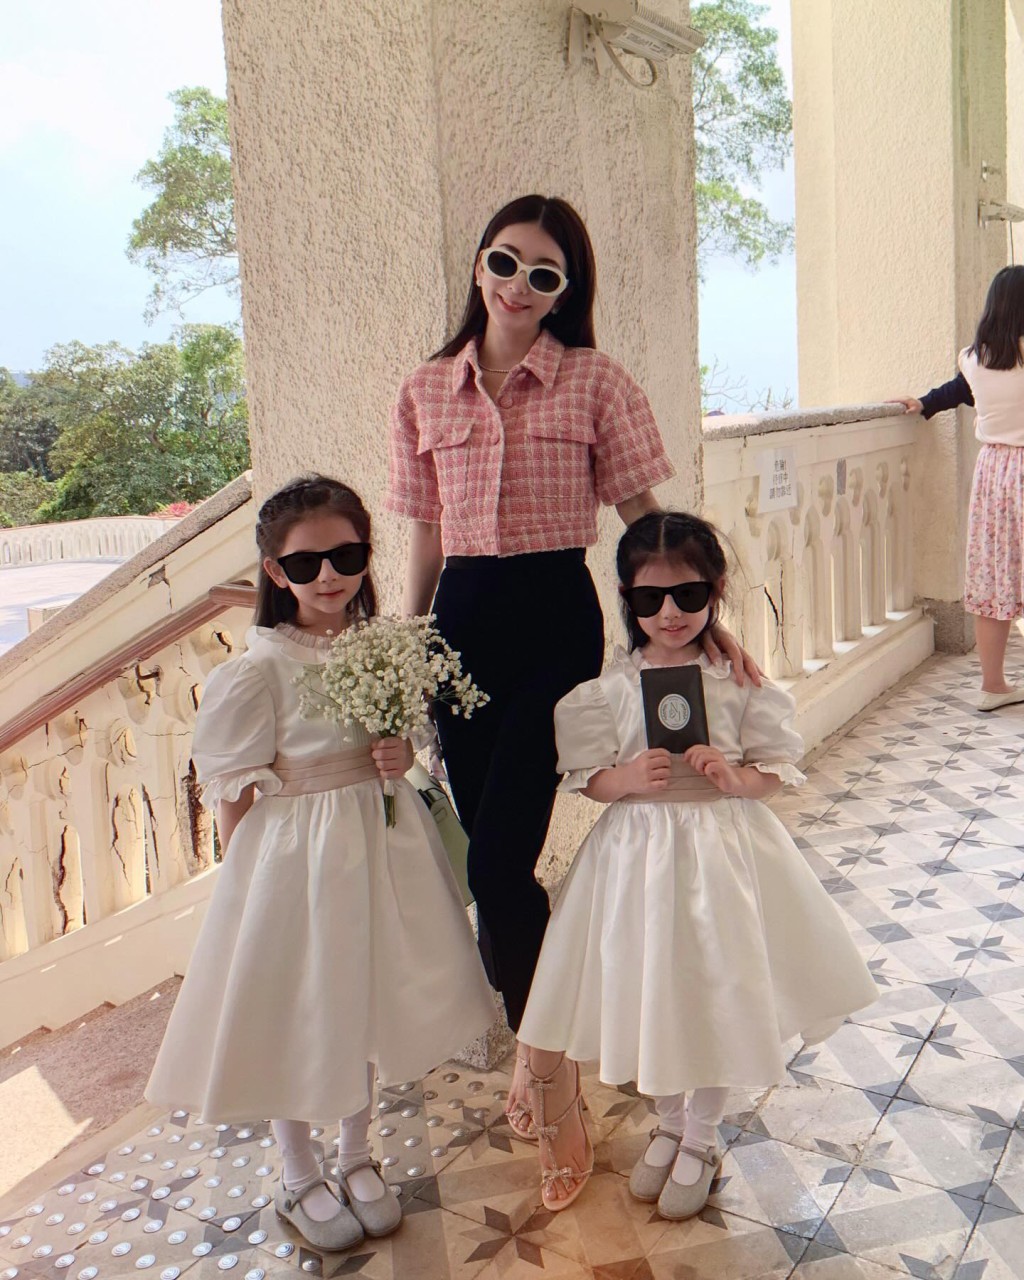 方媛昨日（23日）在IG分享與兩個女兒參加婚的照片，網民都指大女越來越似媽媽，細女很像爸爸。